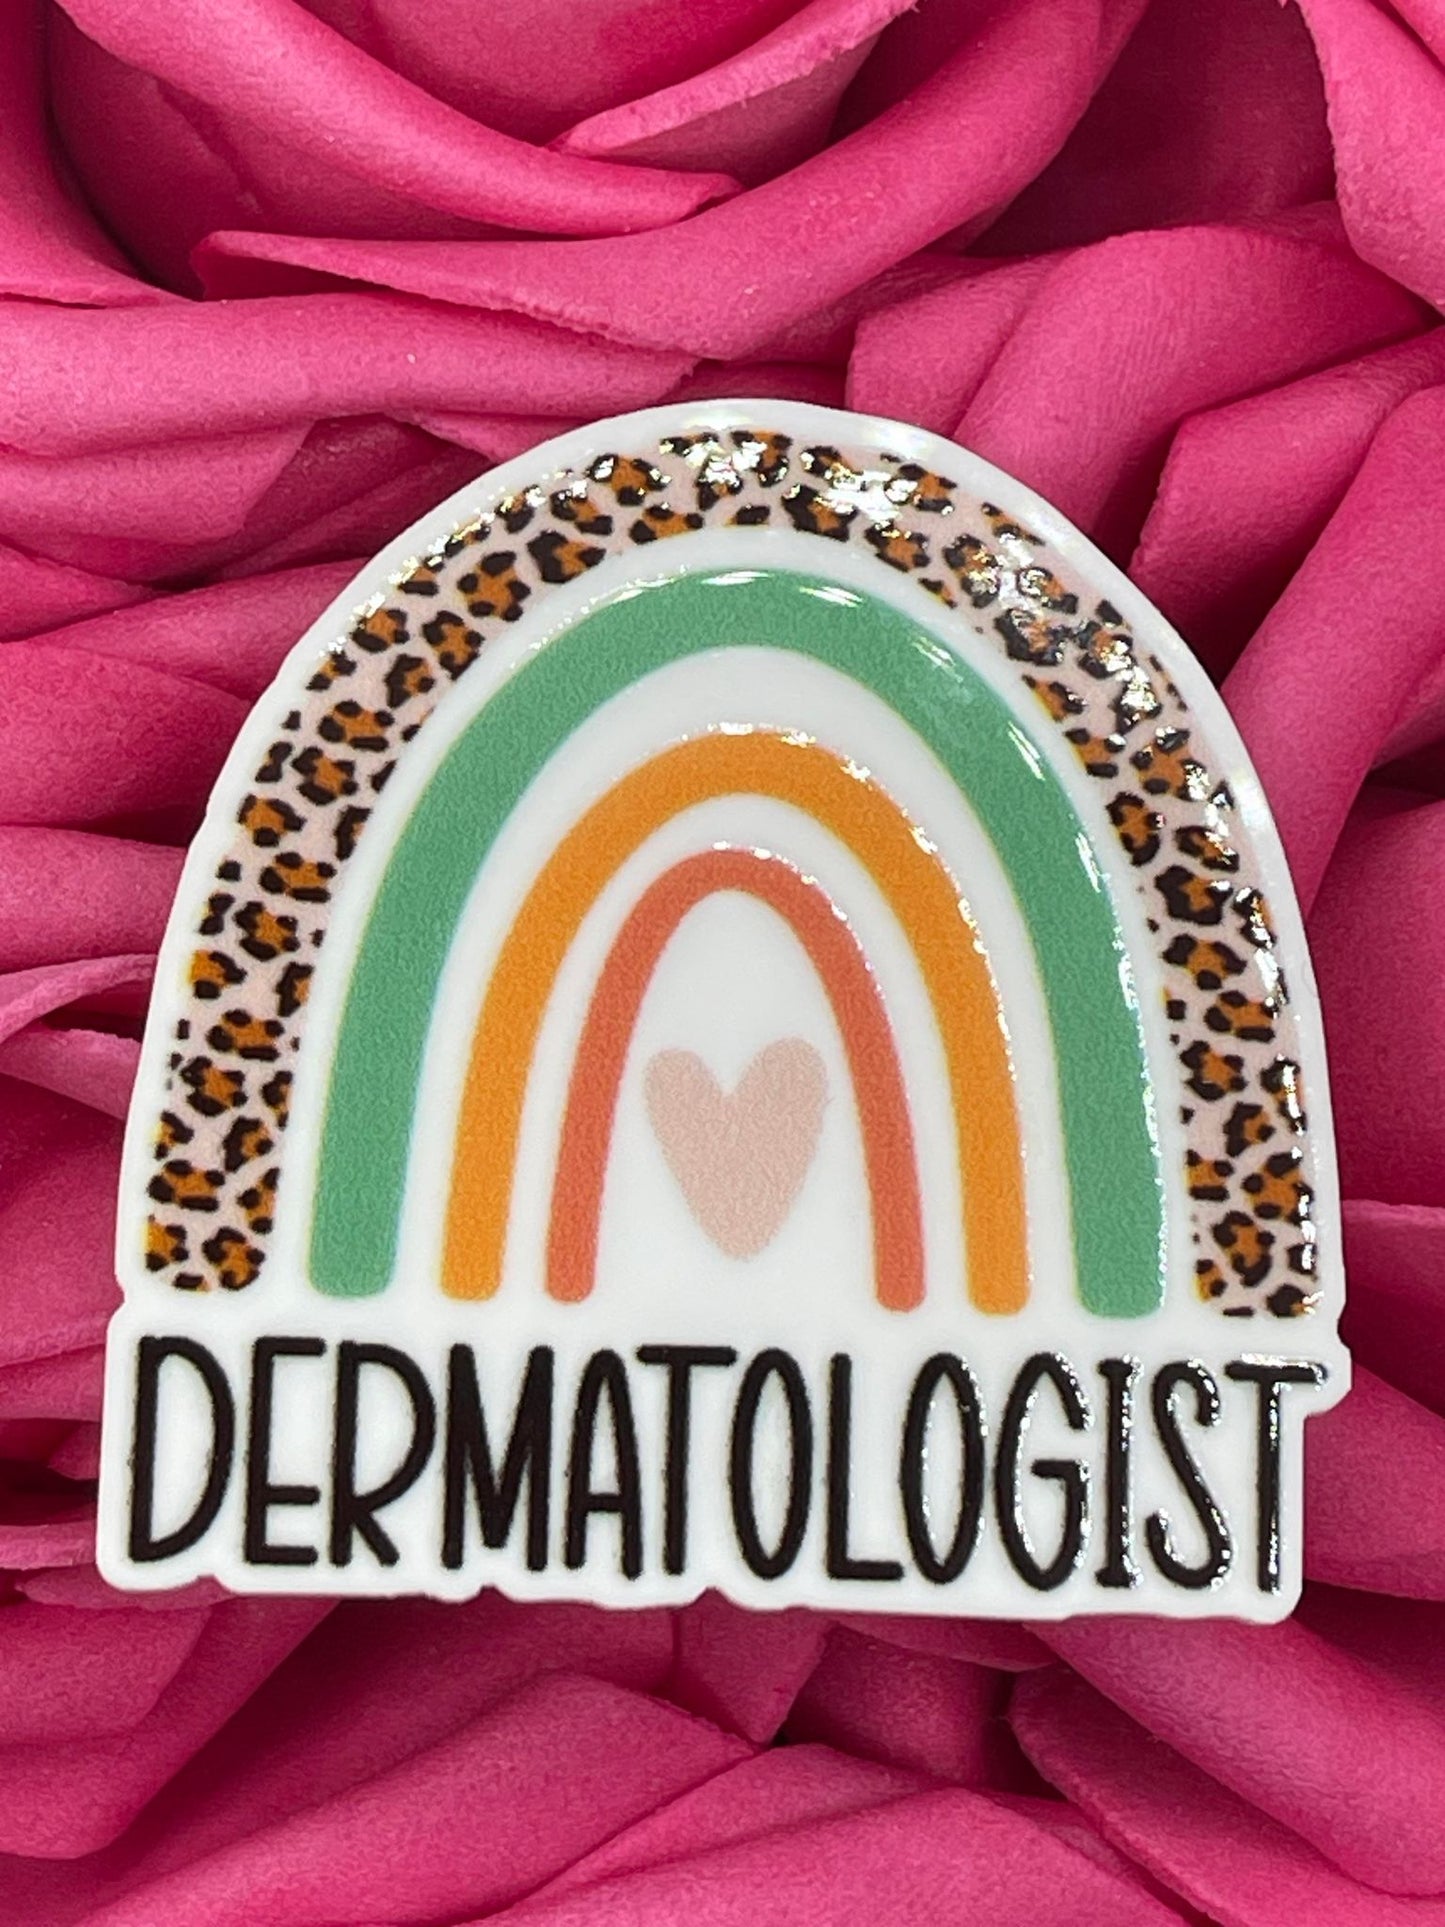 #326 Dermatologist